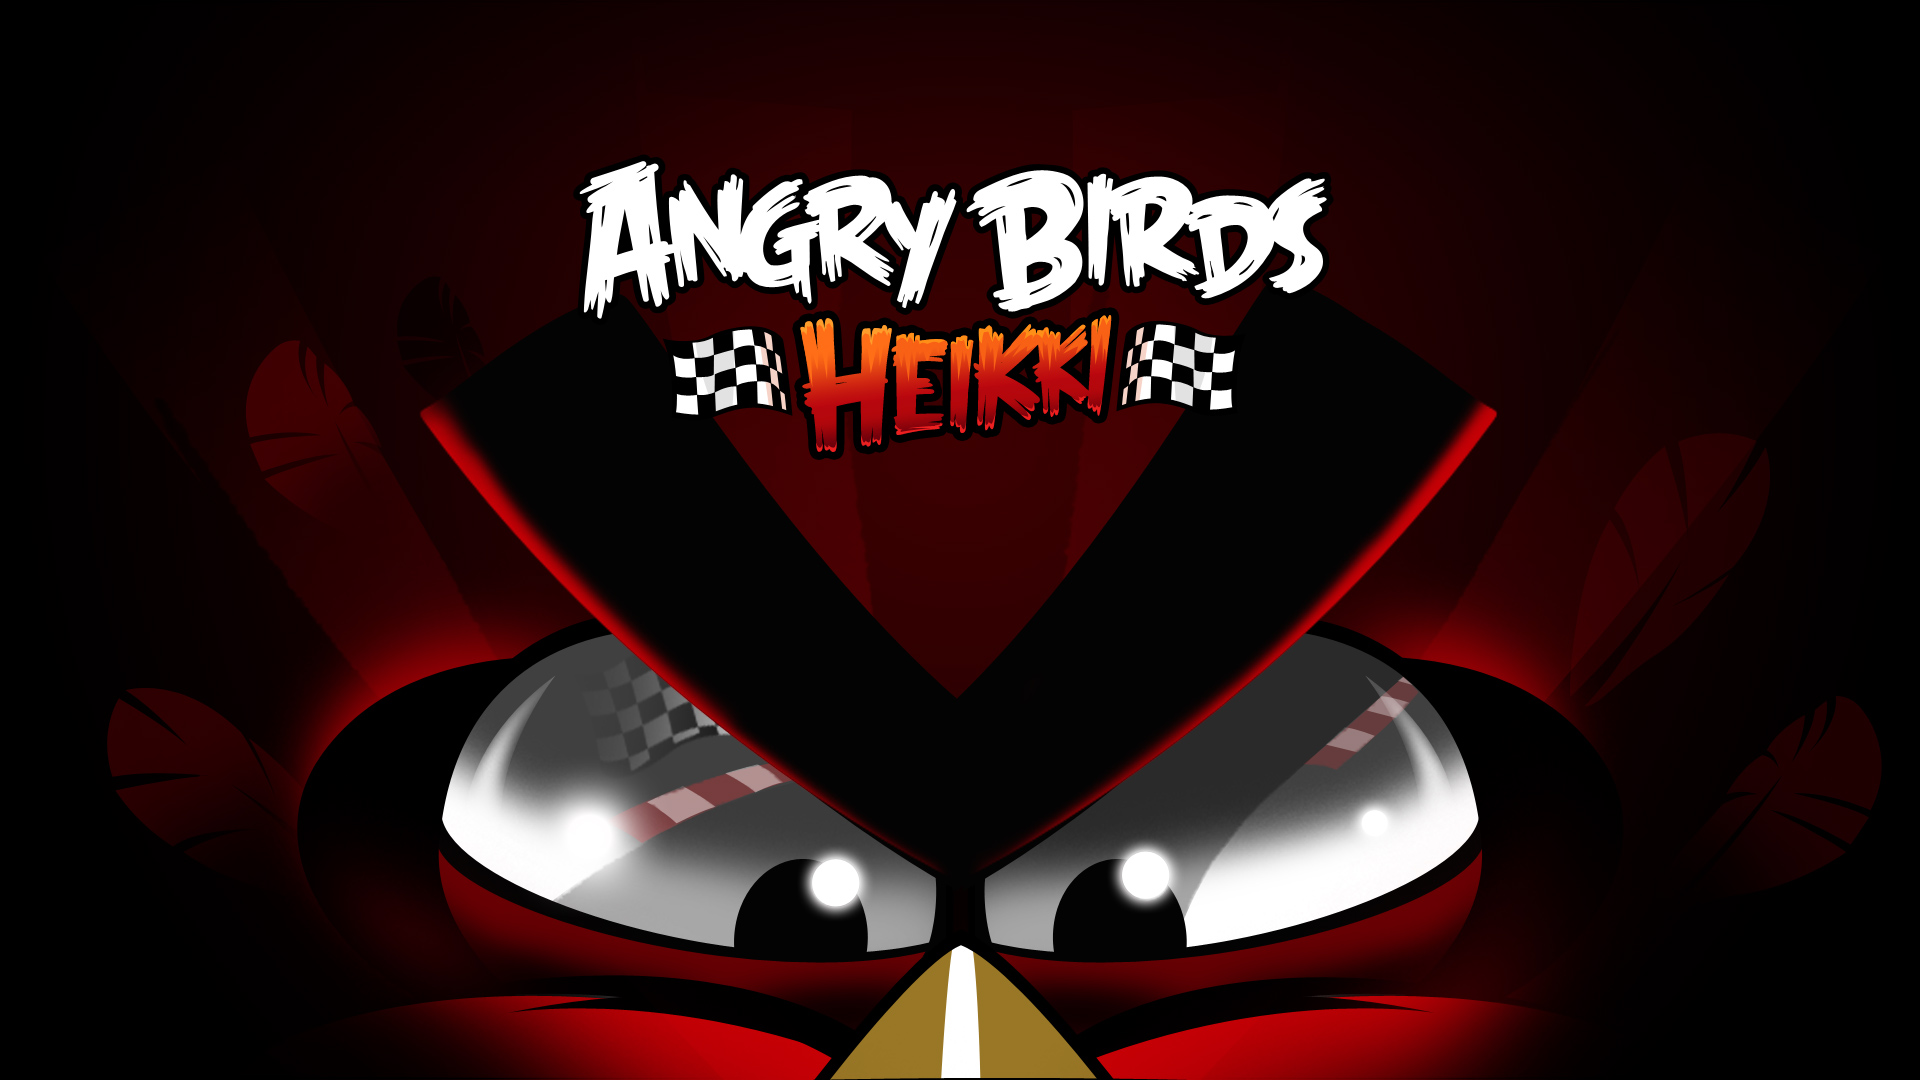 http://2.bp.blogspot.com/-lELAbZBsXKk/T_XFoQ_WqVI/AAAAAAAAD40/HP0JuhD-3g0/d/angry+birds+Heikki+wallpaper+1920x1080.jpg